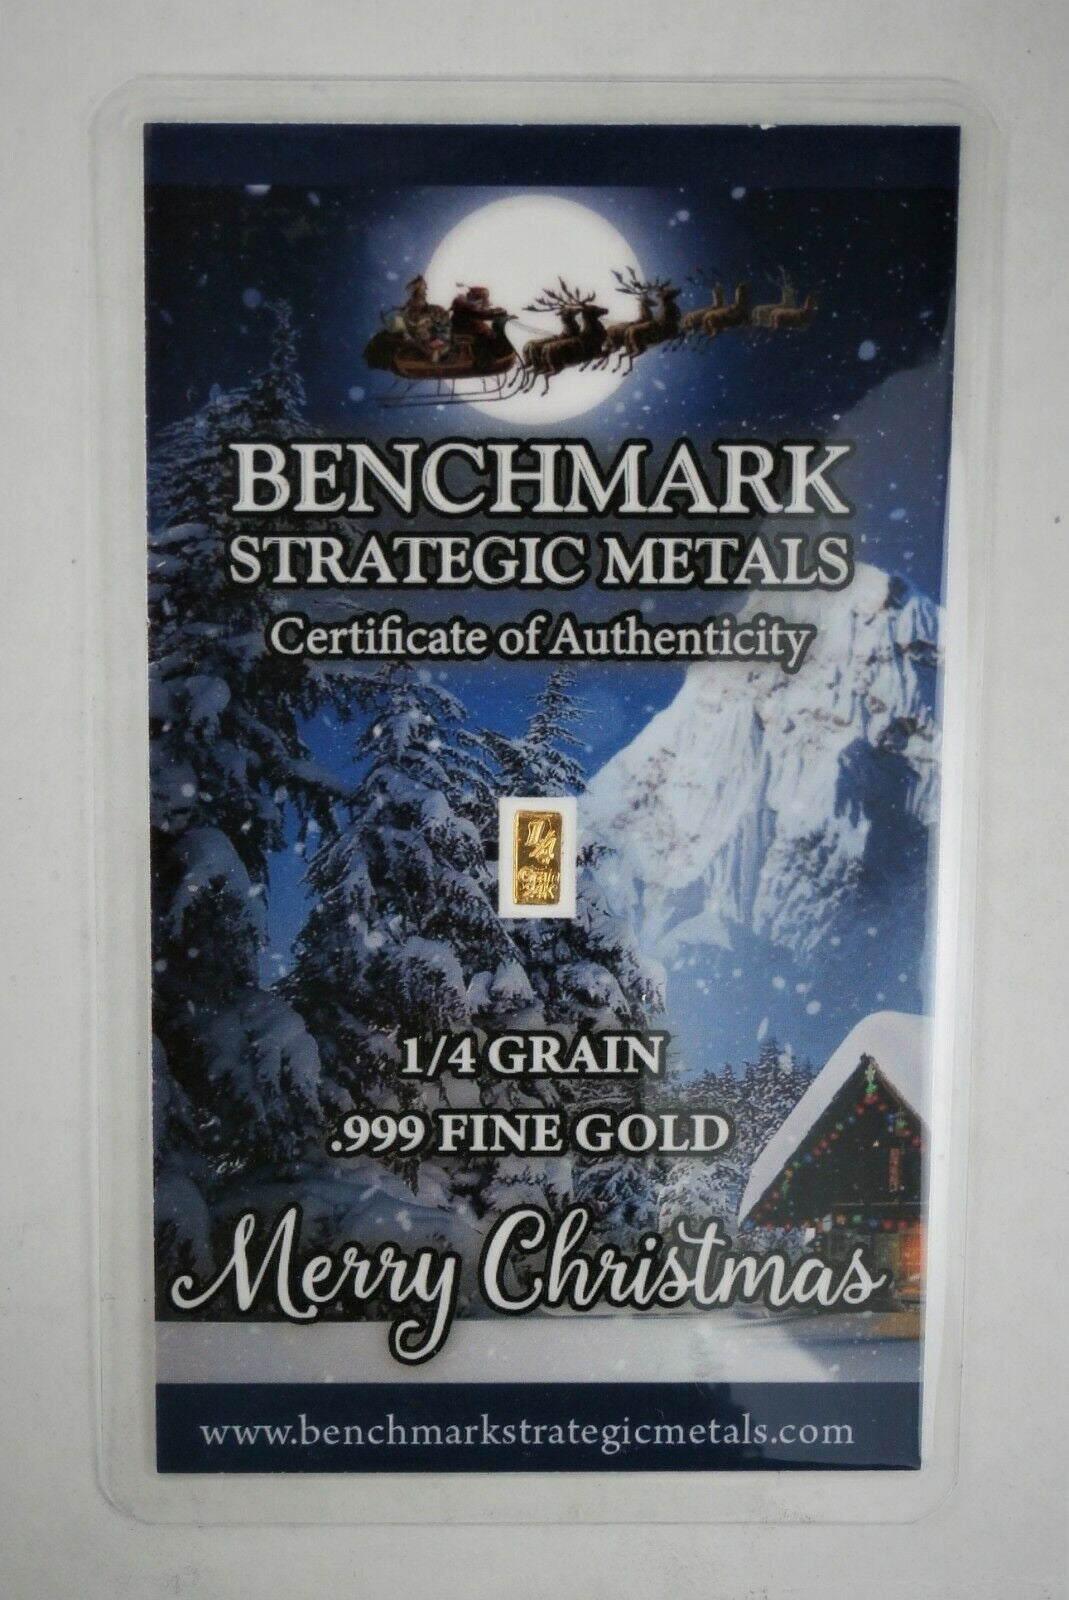 10 X 1/4 GRAIN .9999 FINE 24K GOLD BULLION BARS “WINTER MOONLIGHT” CHRISTMAS - IN COA CARD